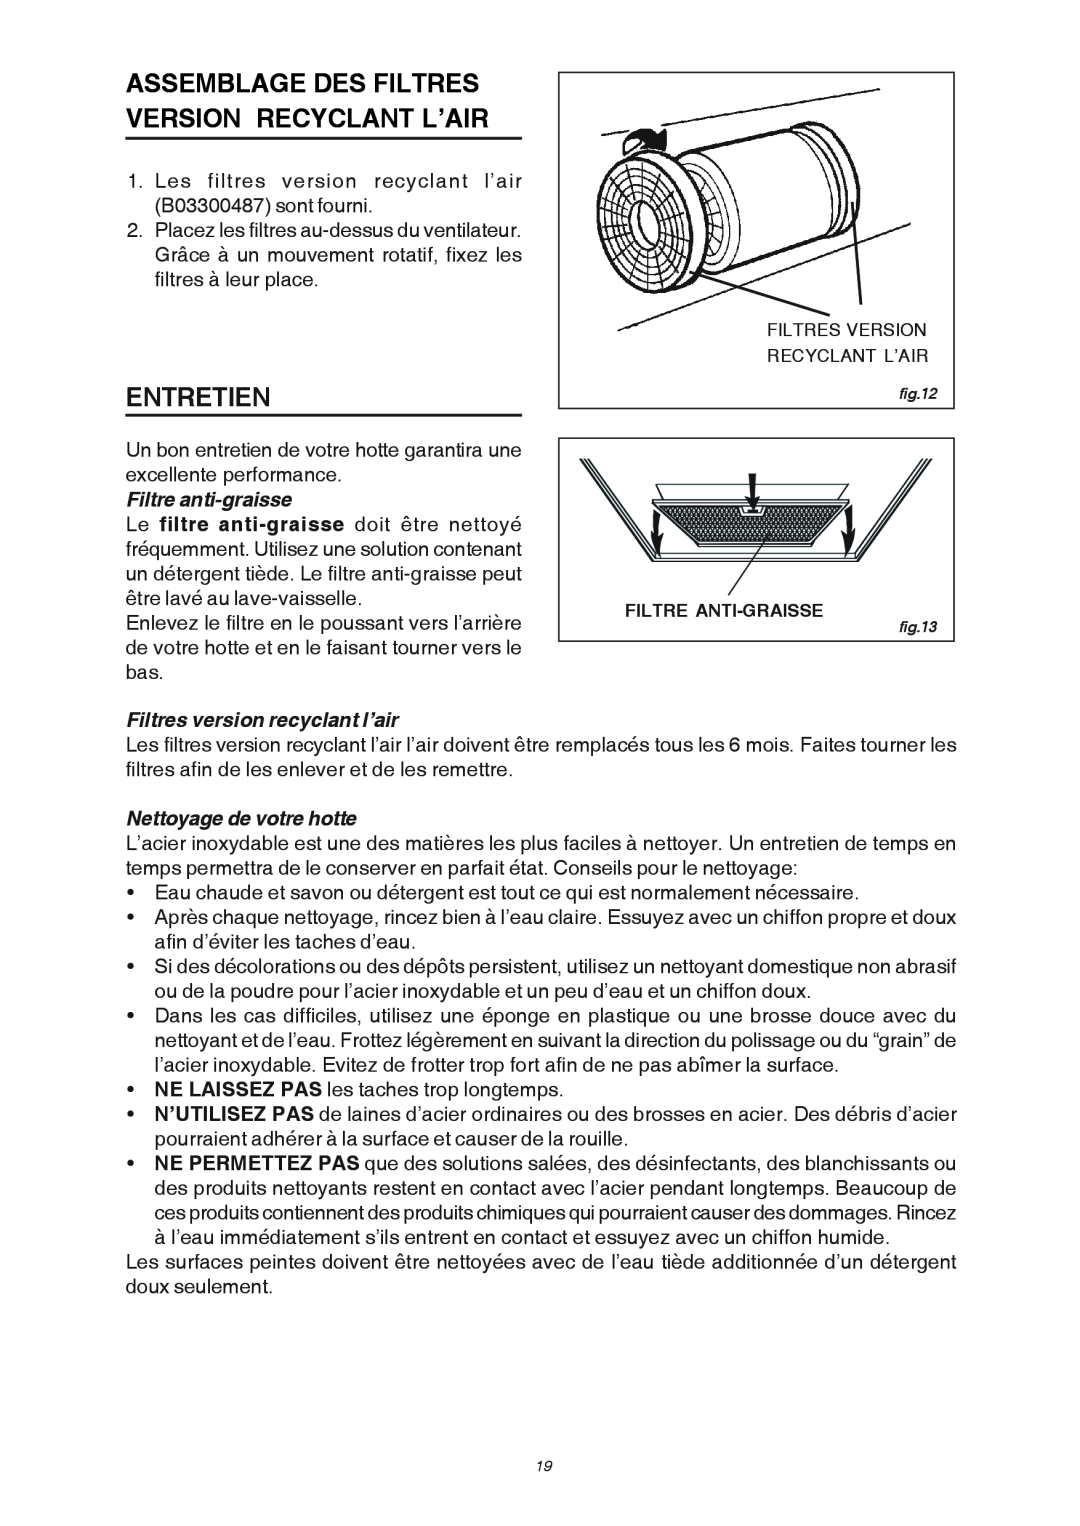 Broan RM503004 Assemblage Des Filtres Version Recyclant L’Air, Entretien, Filtre anti-graisse, Nettoyage de votre hotte 